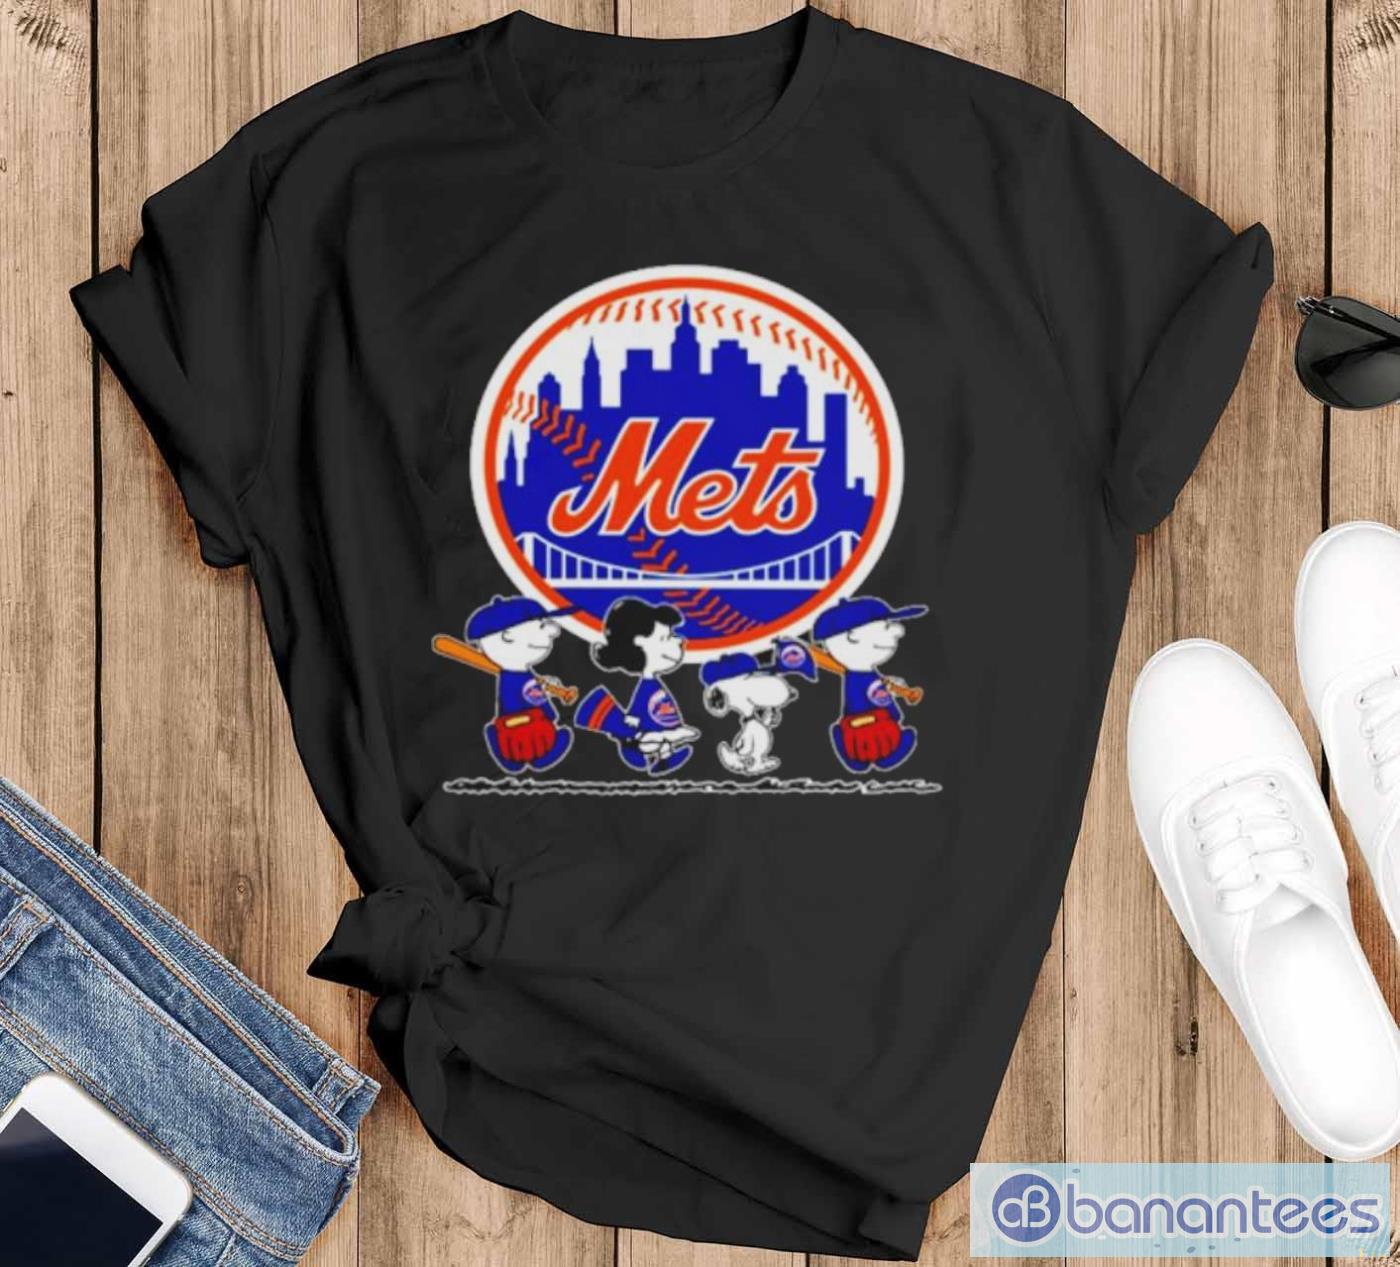 NY METS, Shirts